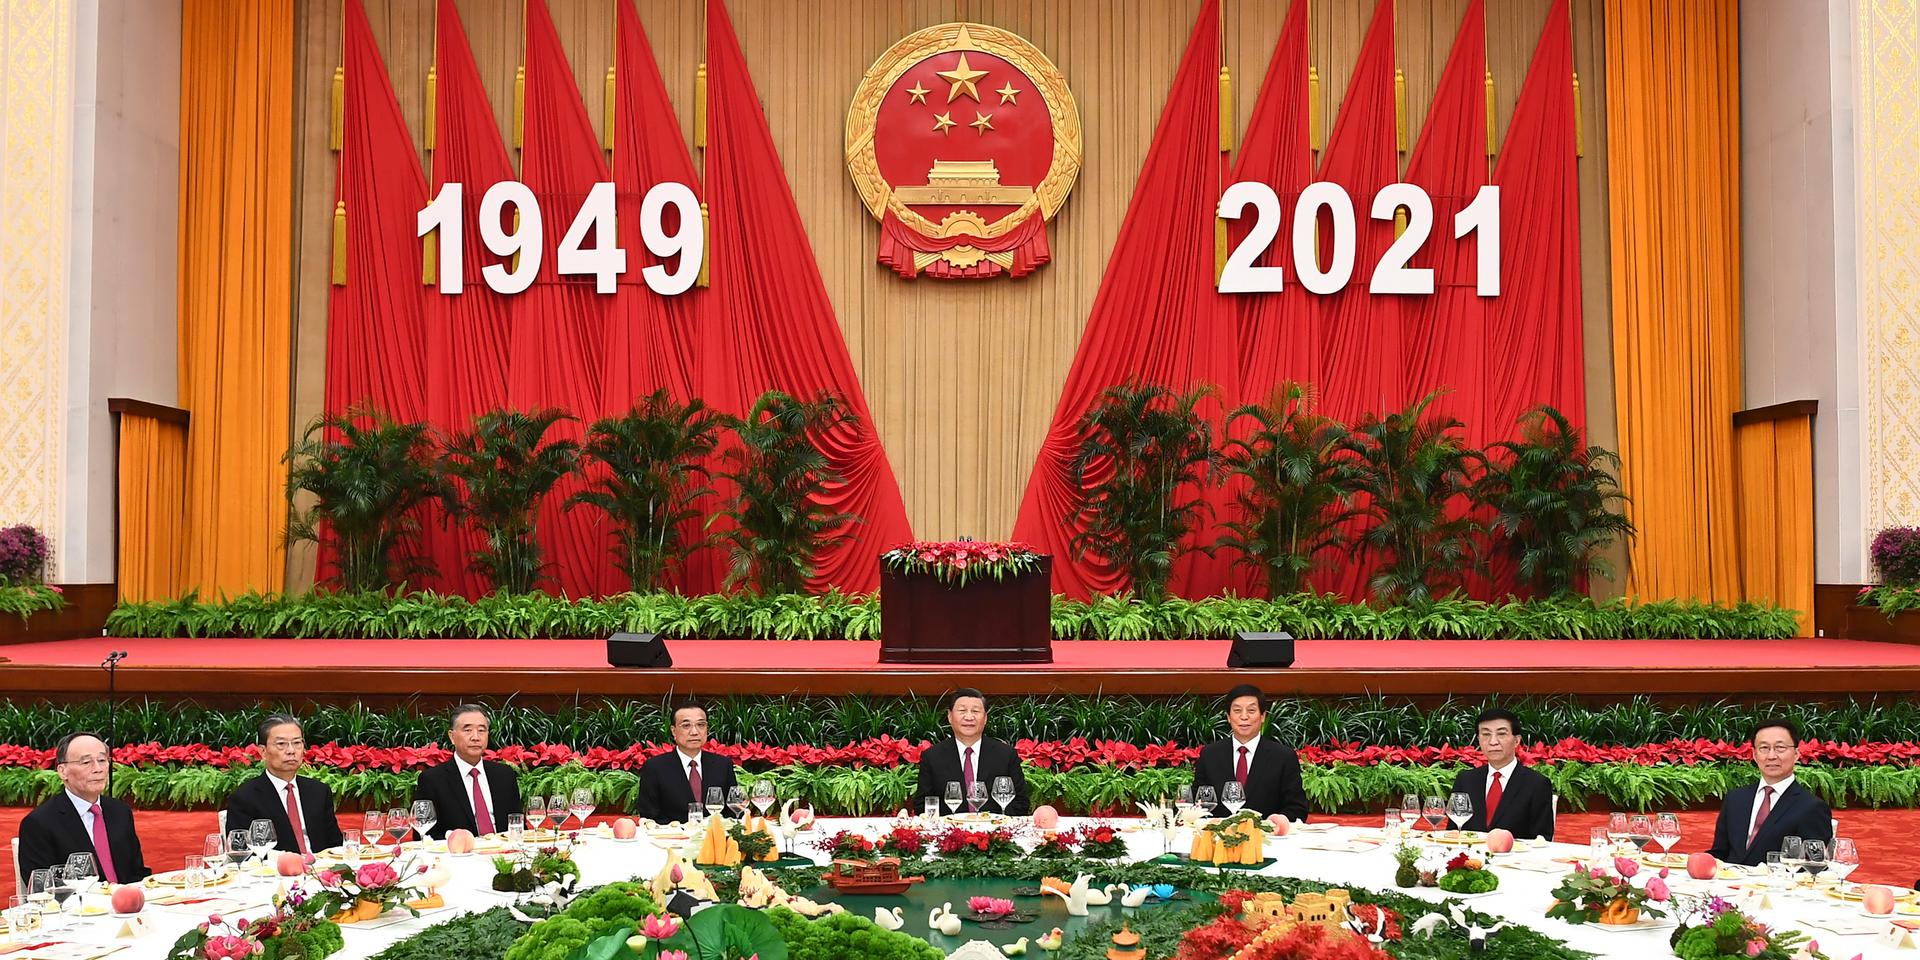 Det kinesiska kommunistpartiets ledning under firandet av landets nationaldag.